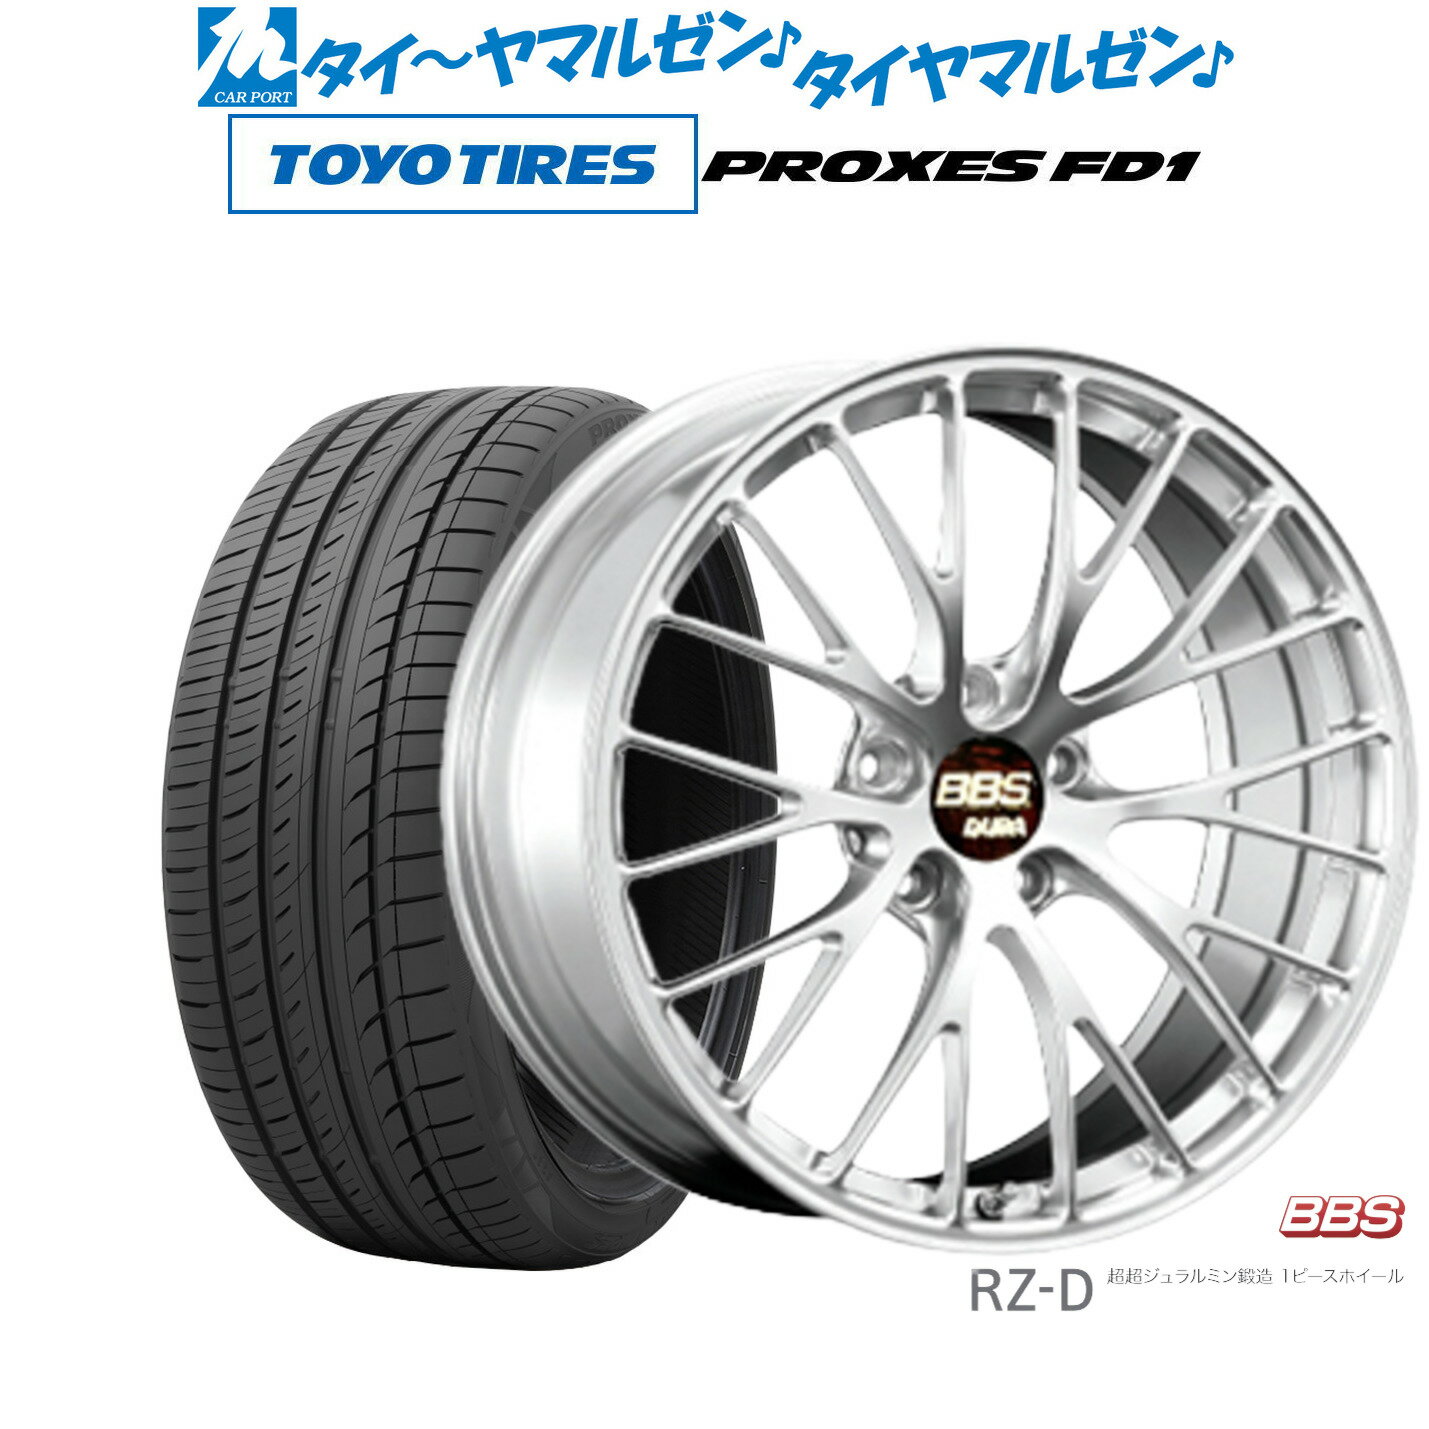 [5/20]割引クーポン配布新品 サマータイヤ ホイール4本セットBBS JAPAN RZ-D20インチ 8.5Jトーヨータイヤ プロクセス PROXES FD1 245/35R20